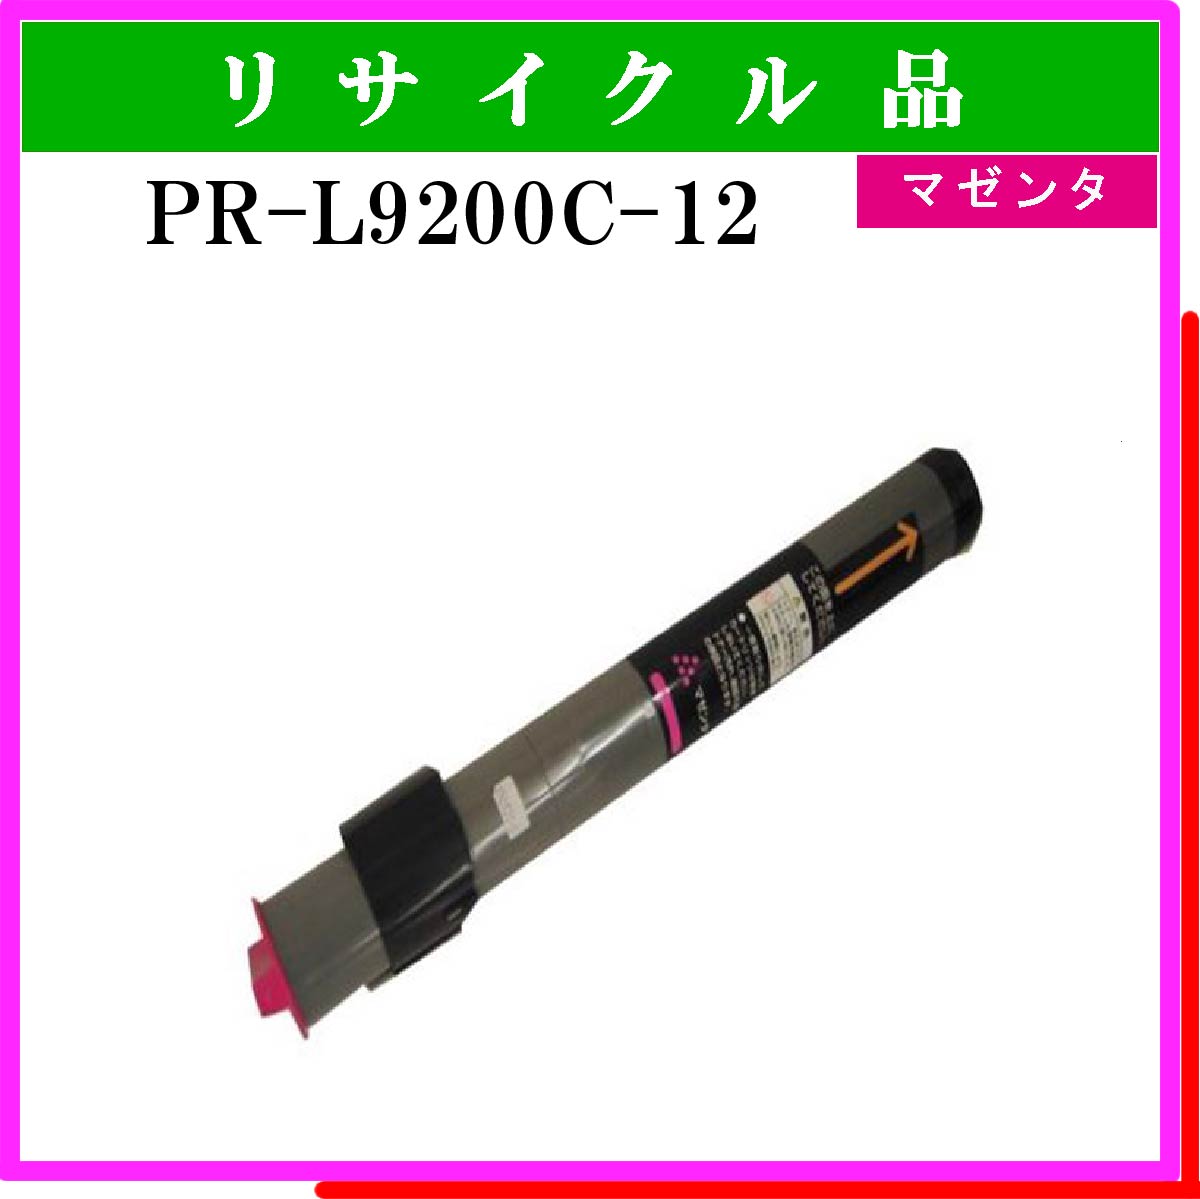 PR-L9200C-12